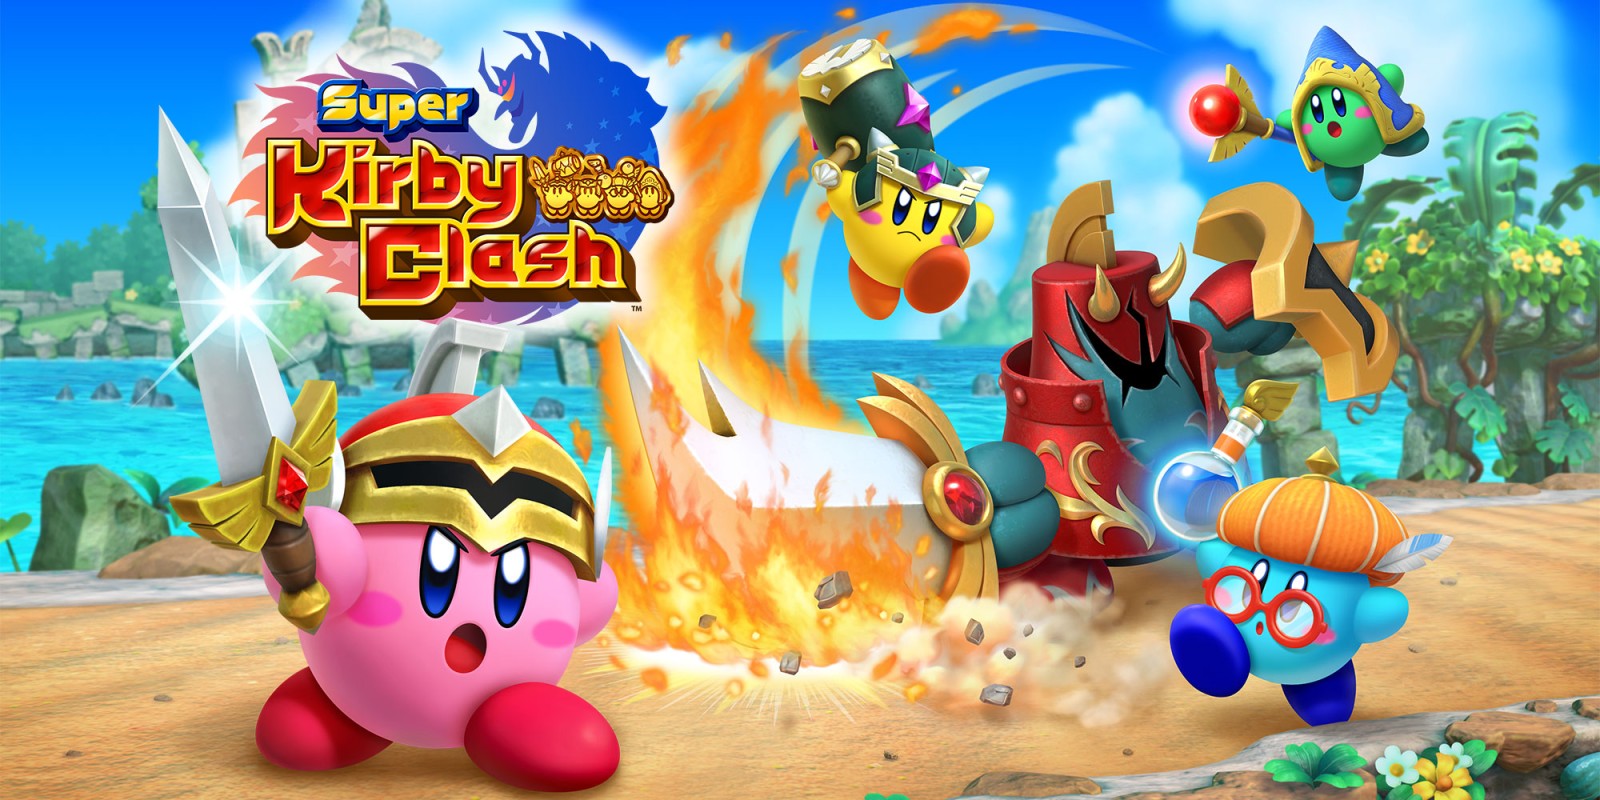 รวมพลัง Kirby ใน Super Kirby Clash เกมฟรีจาก Nintendo Switch